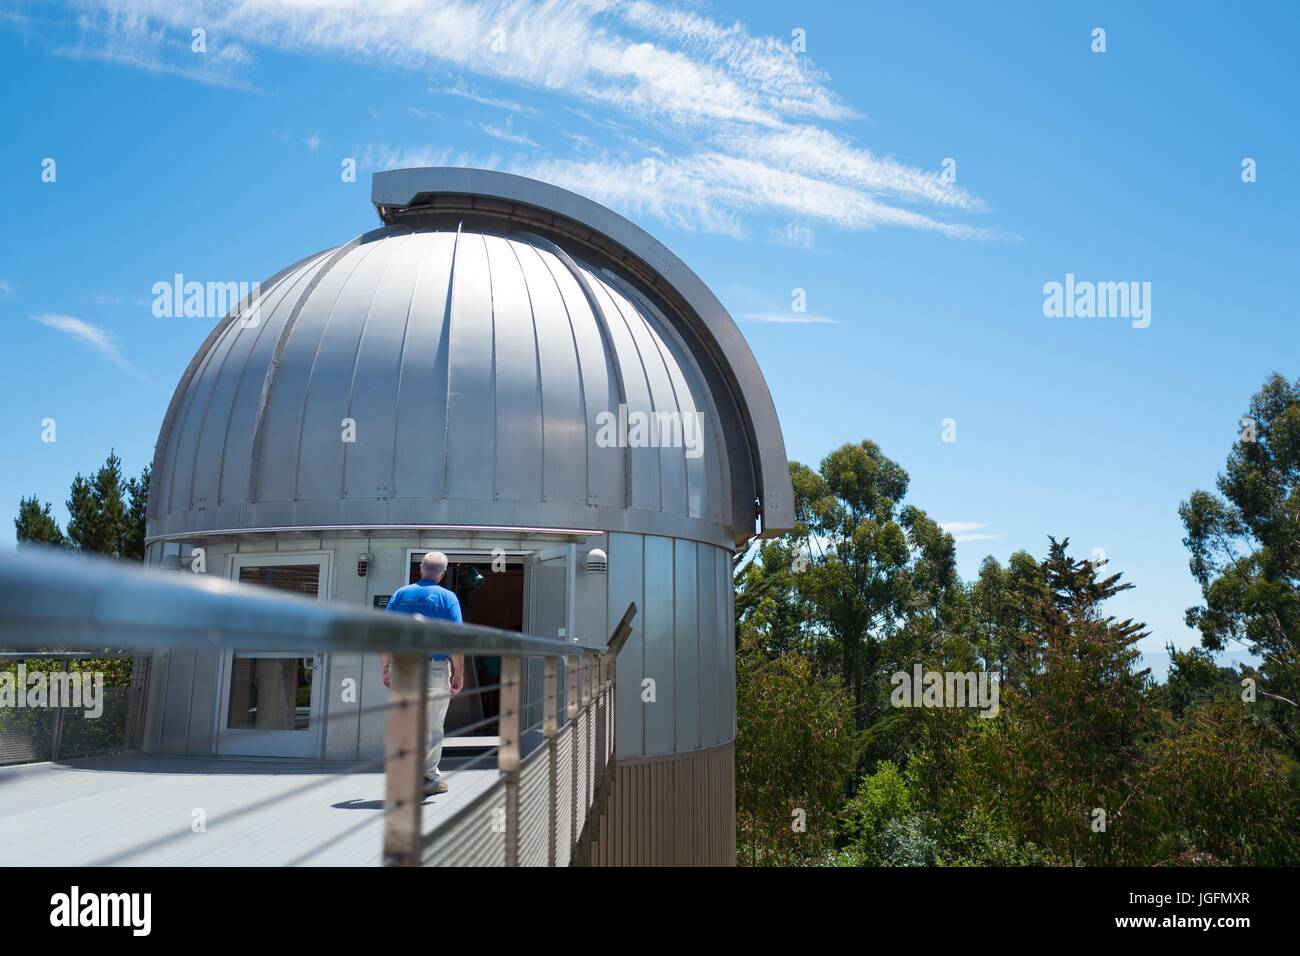 Ein Mann nähert sich eine Sternwarte Kuppel an einem sonnigen Tag die Chabot Space Science Center, ein Wissenschaftsmuseum und Observatorium in Oakland, Kalifornien, 15. Juni 2017. Stockfoto